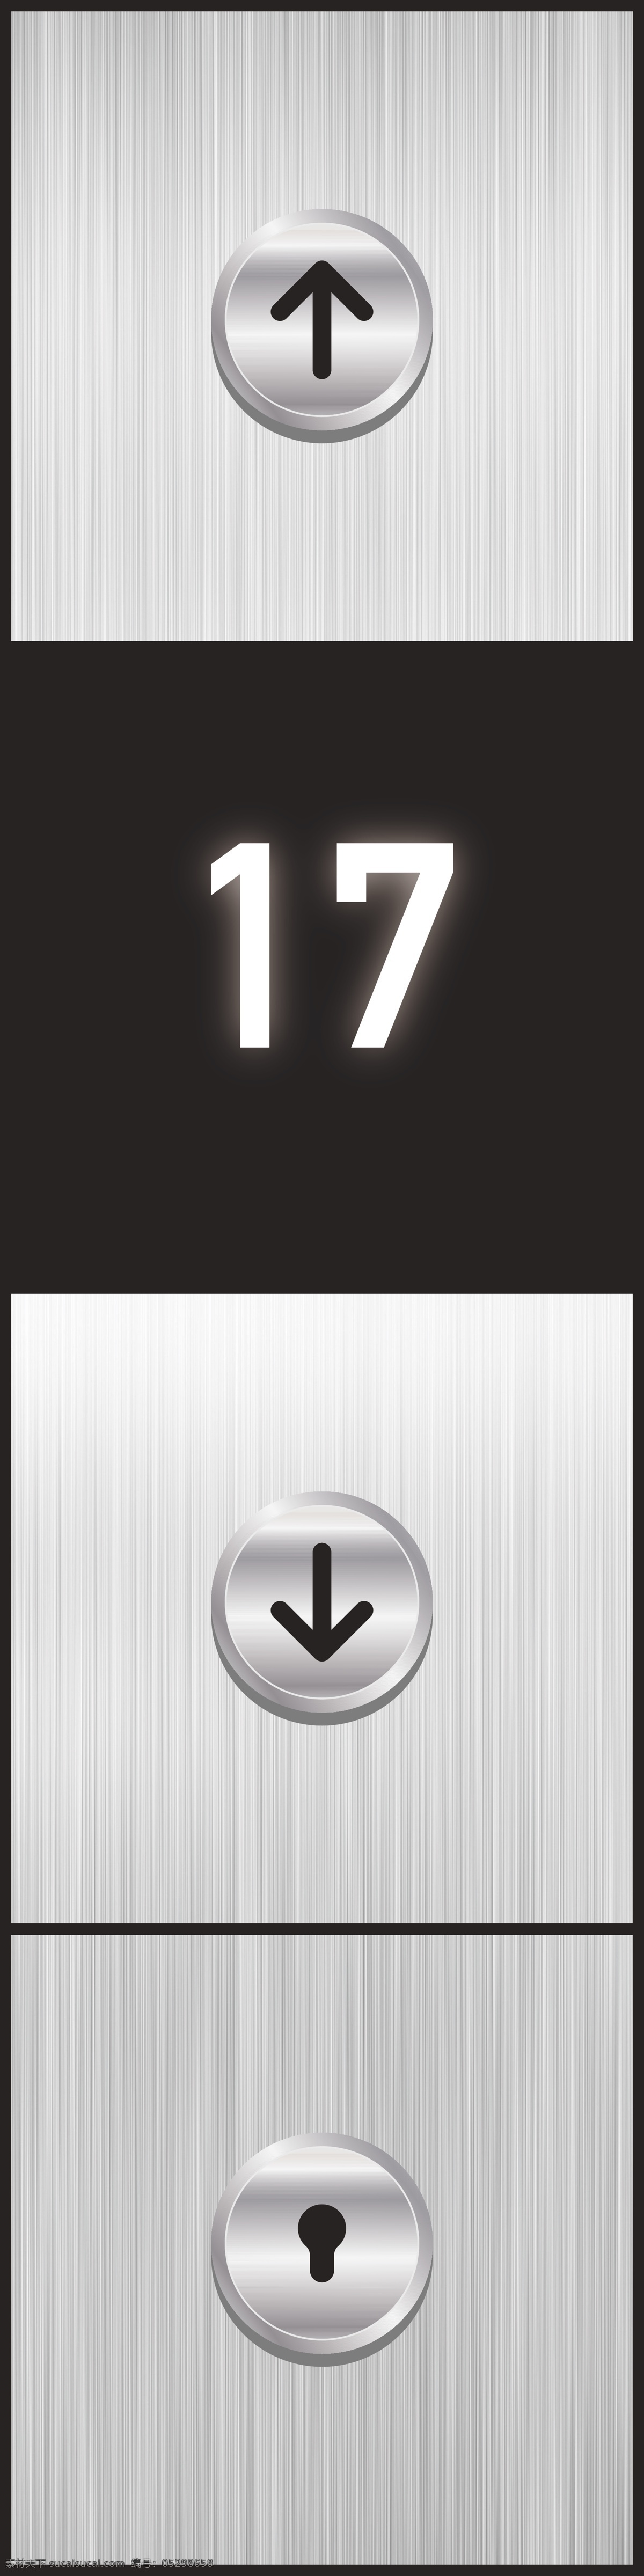 电梯 电梯贴 电梯按钮 ui图片 ui icon web 界面设计 图标按钮